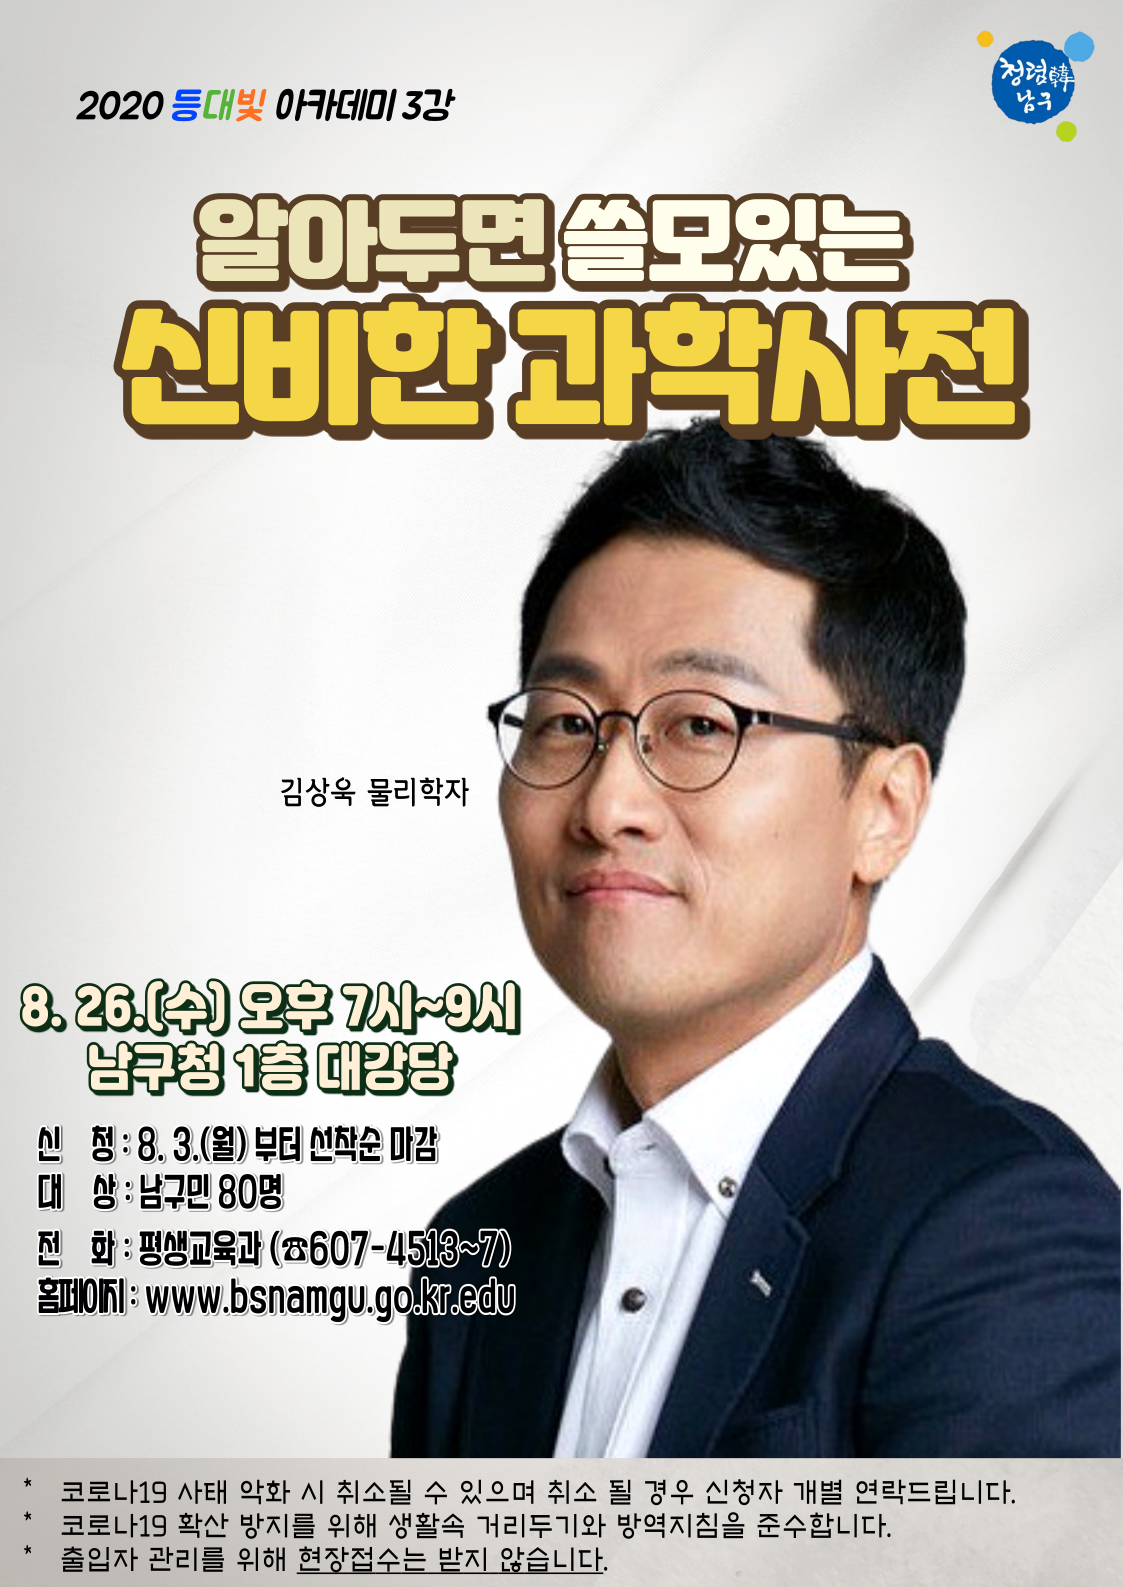 등대빛아카데미 김상욱 홍보전단지.png